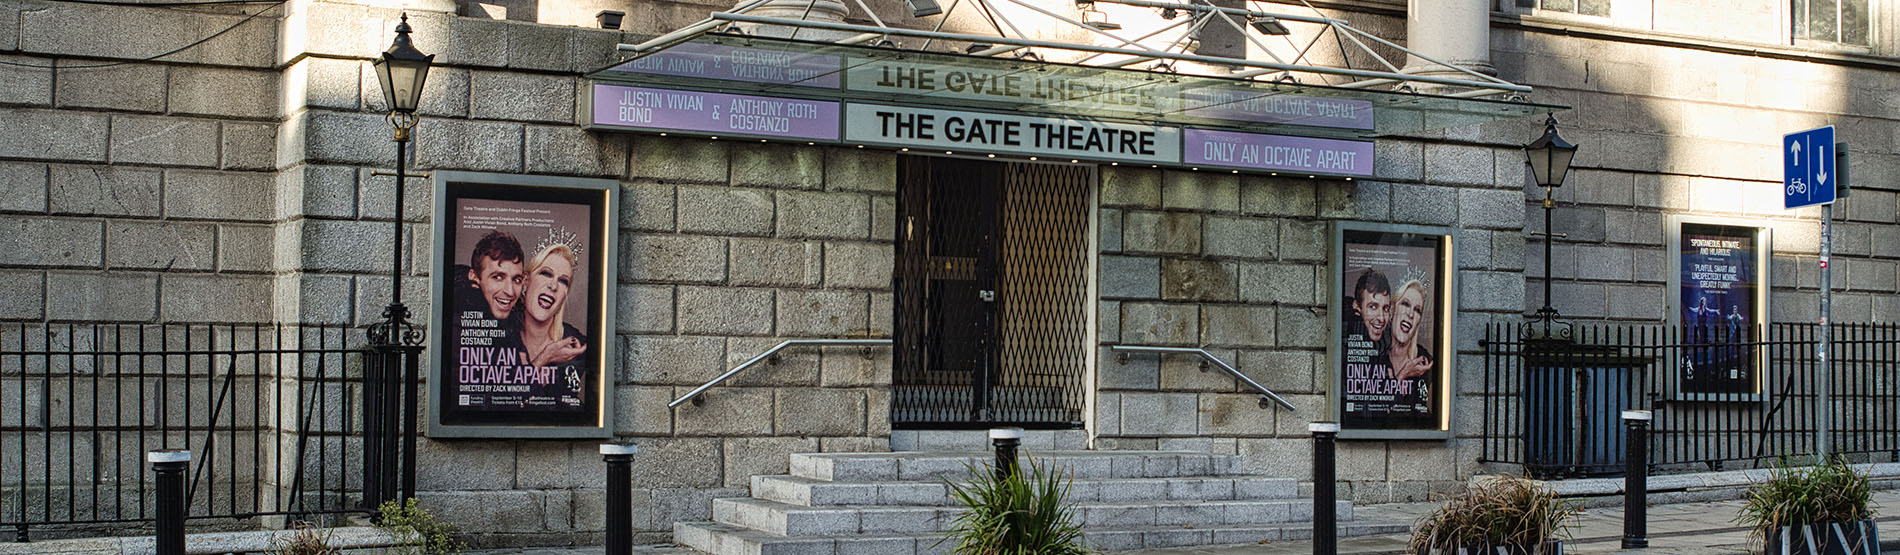 The Gate Theatre